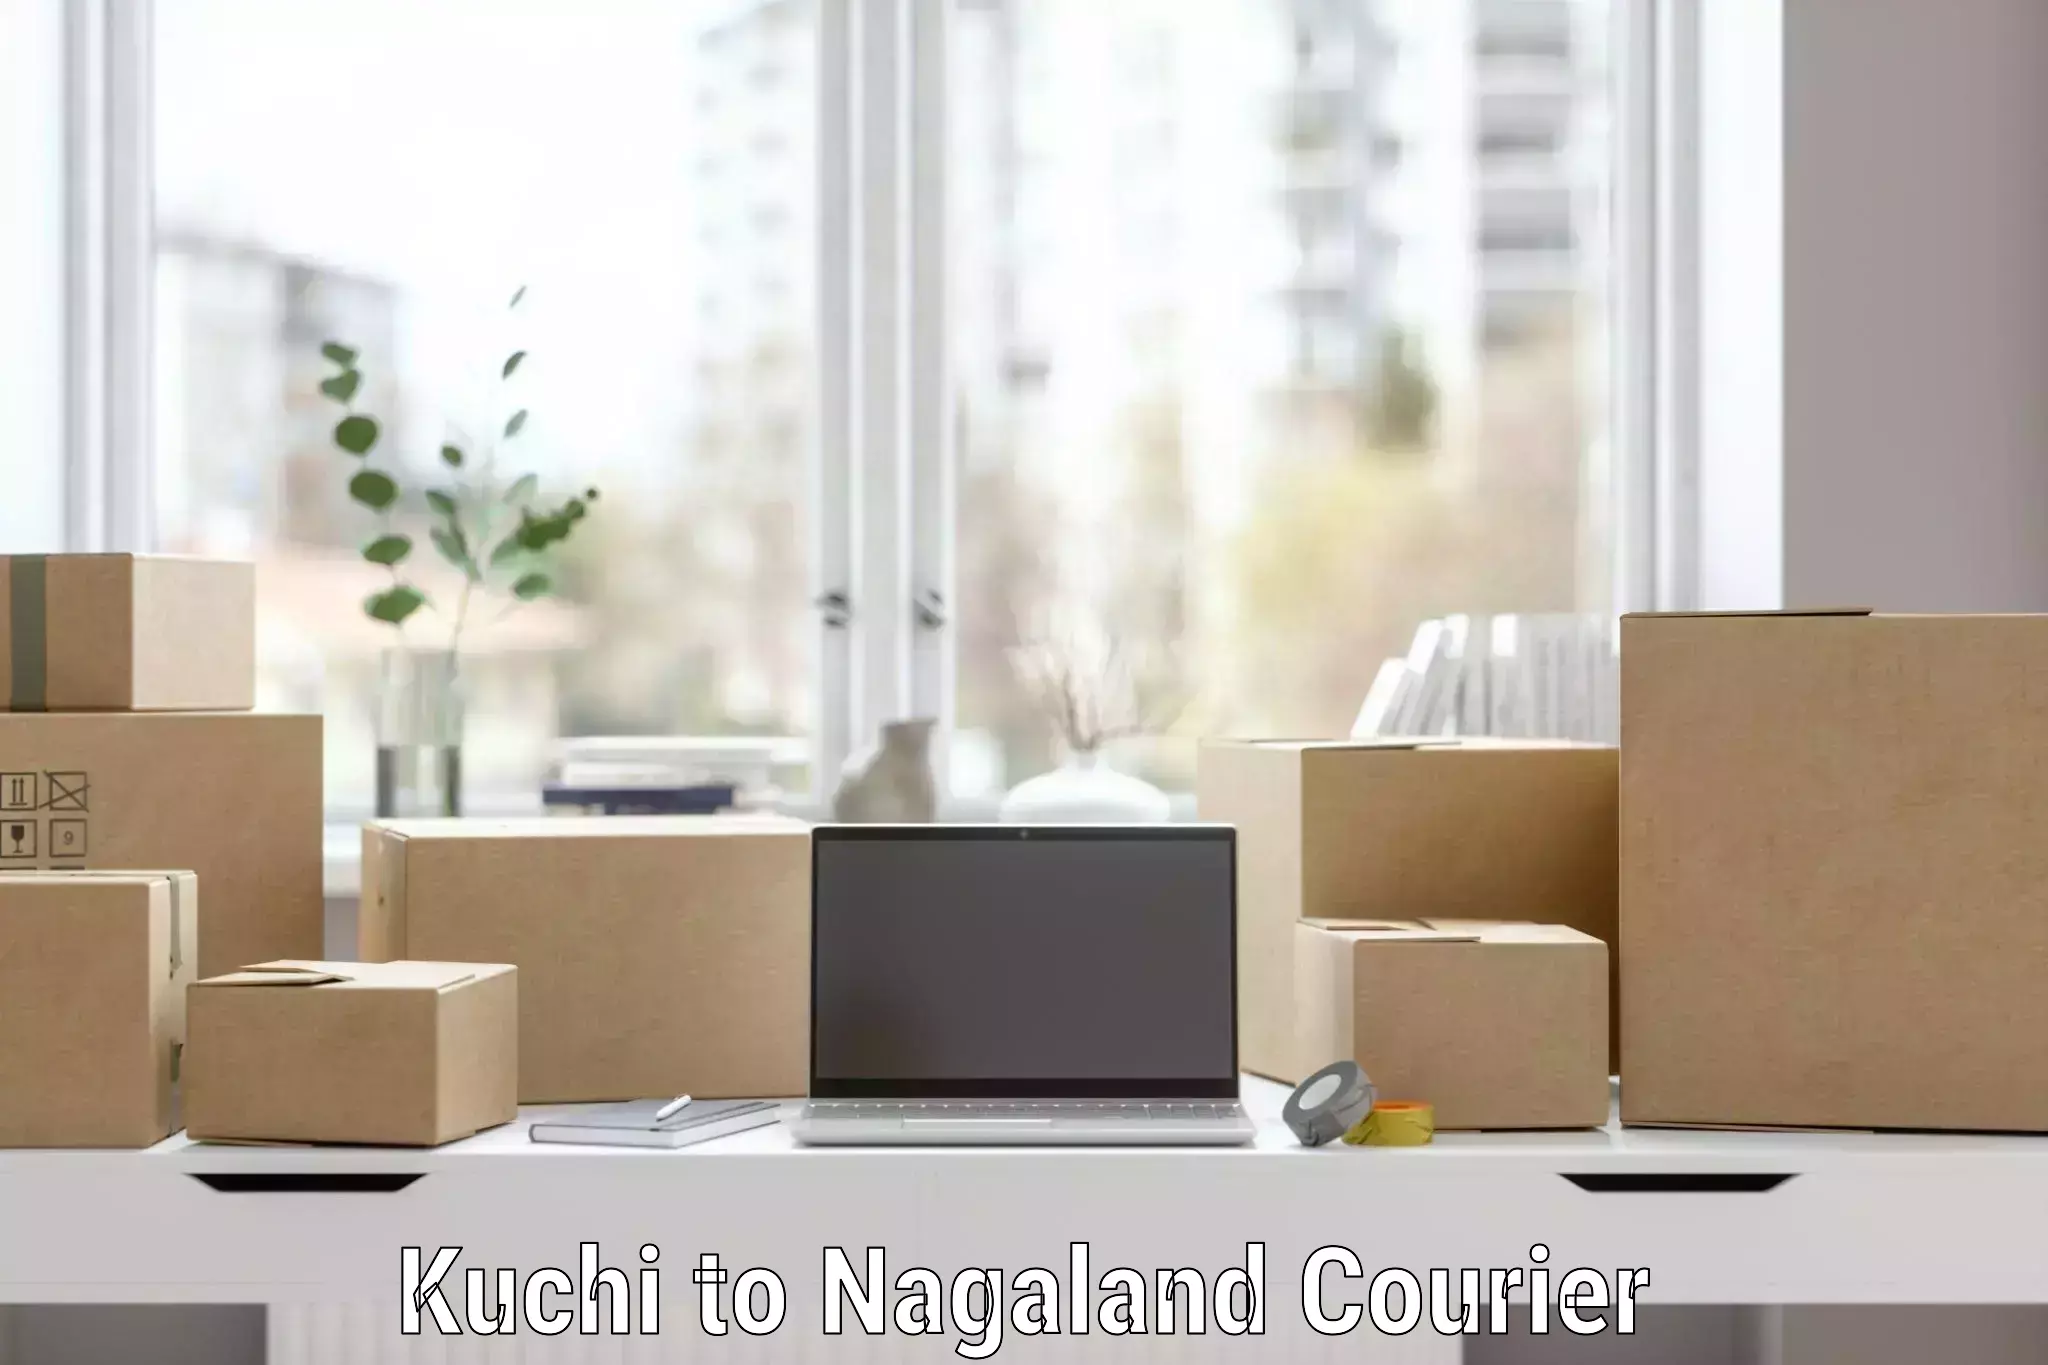 Household moving experts Kuchi to Nagaland